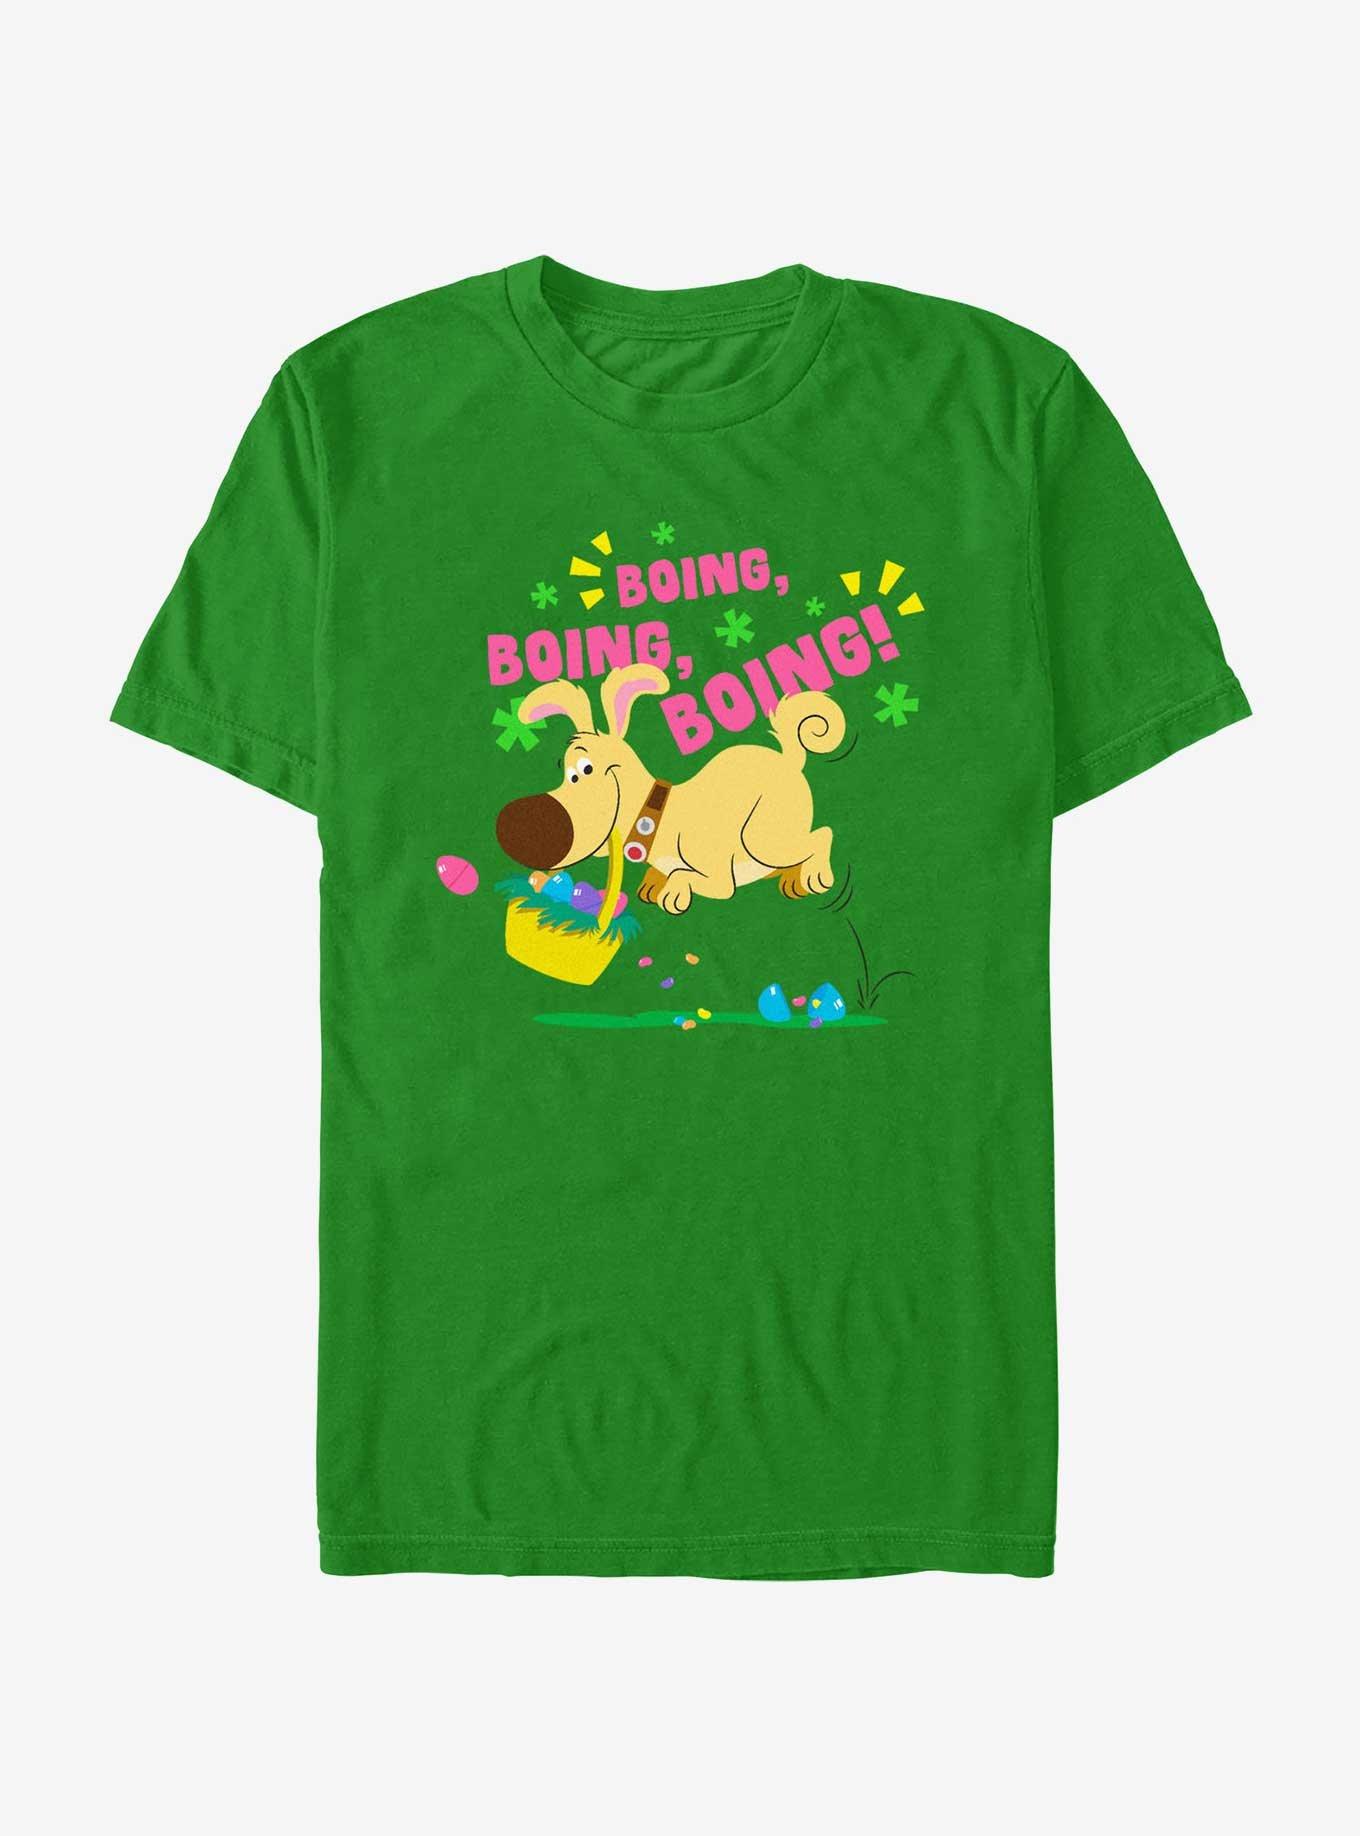 Disney Pixar Up Dug Bunny Hop T-Shirt, KELLY, hi-res